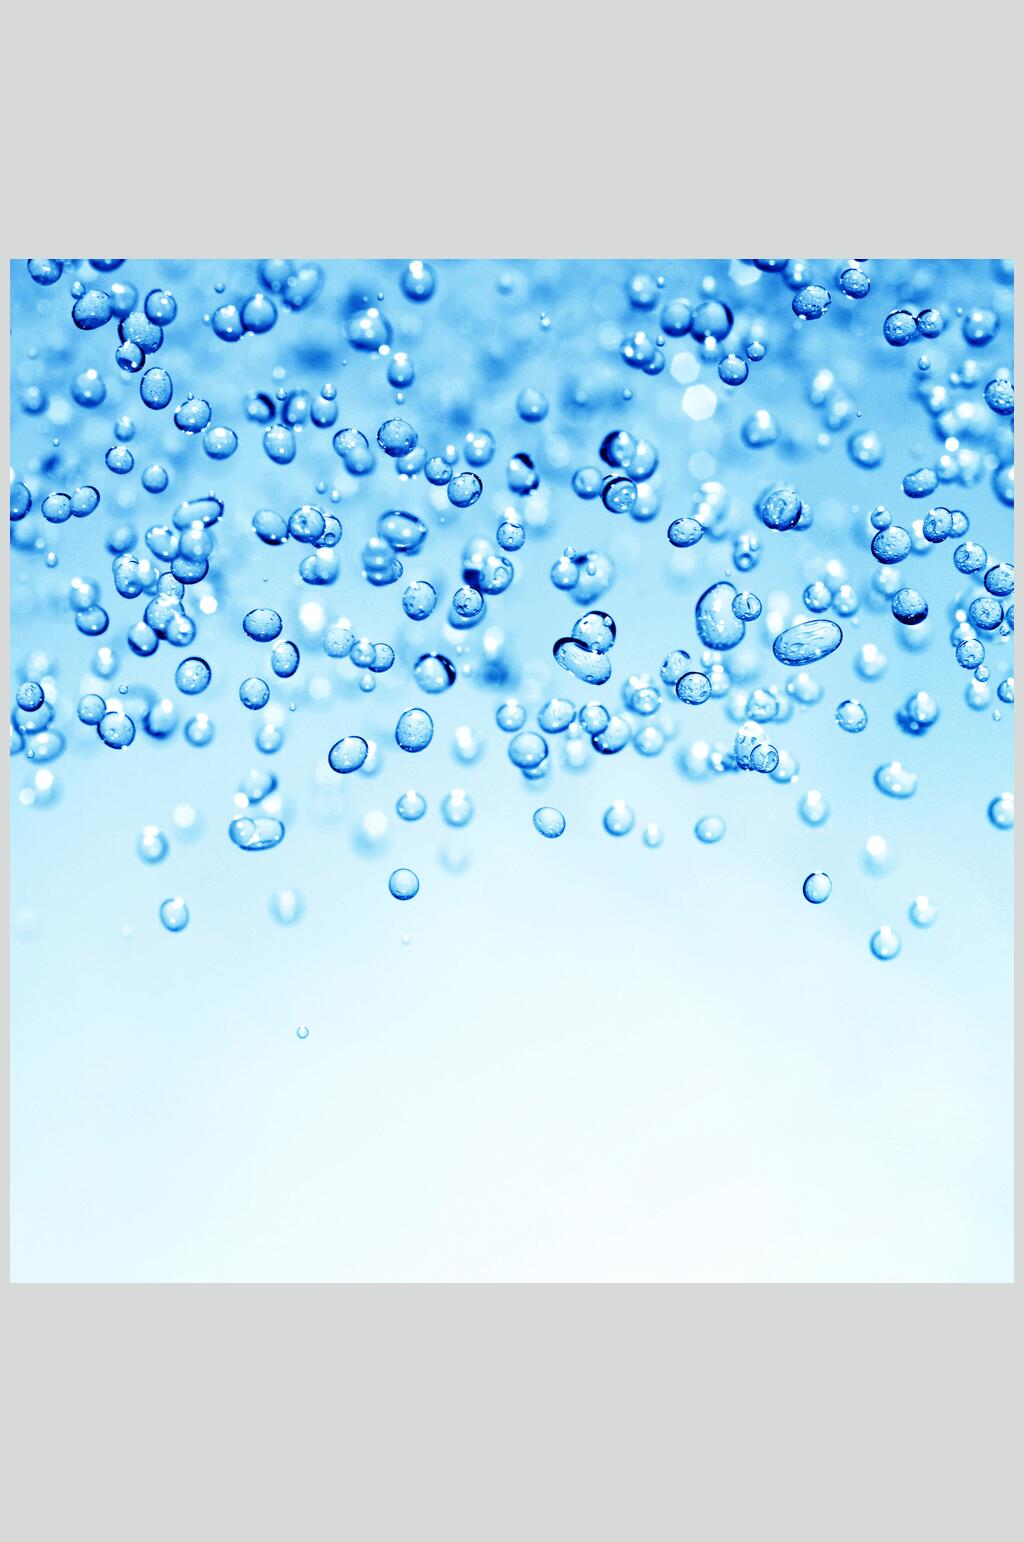 模糊透明水珠雨滴摄影素材图片